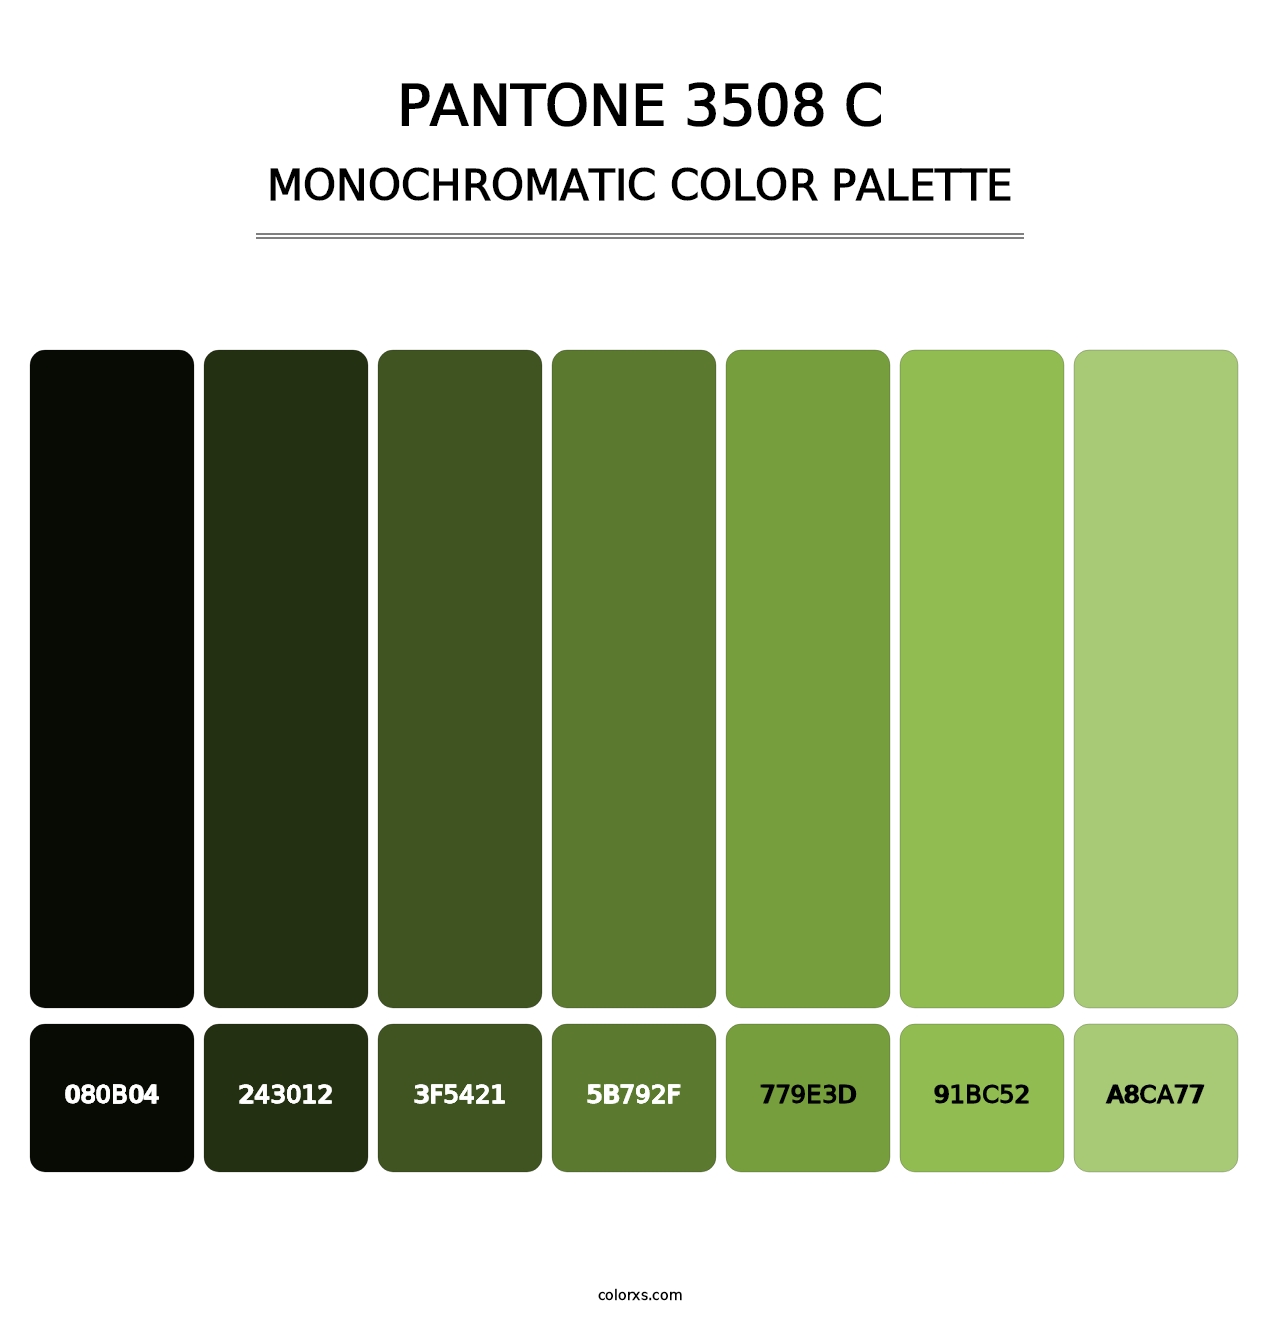 PANTONE 3508 C - Monochromatic Color Palette